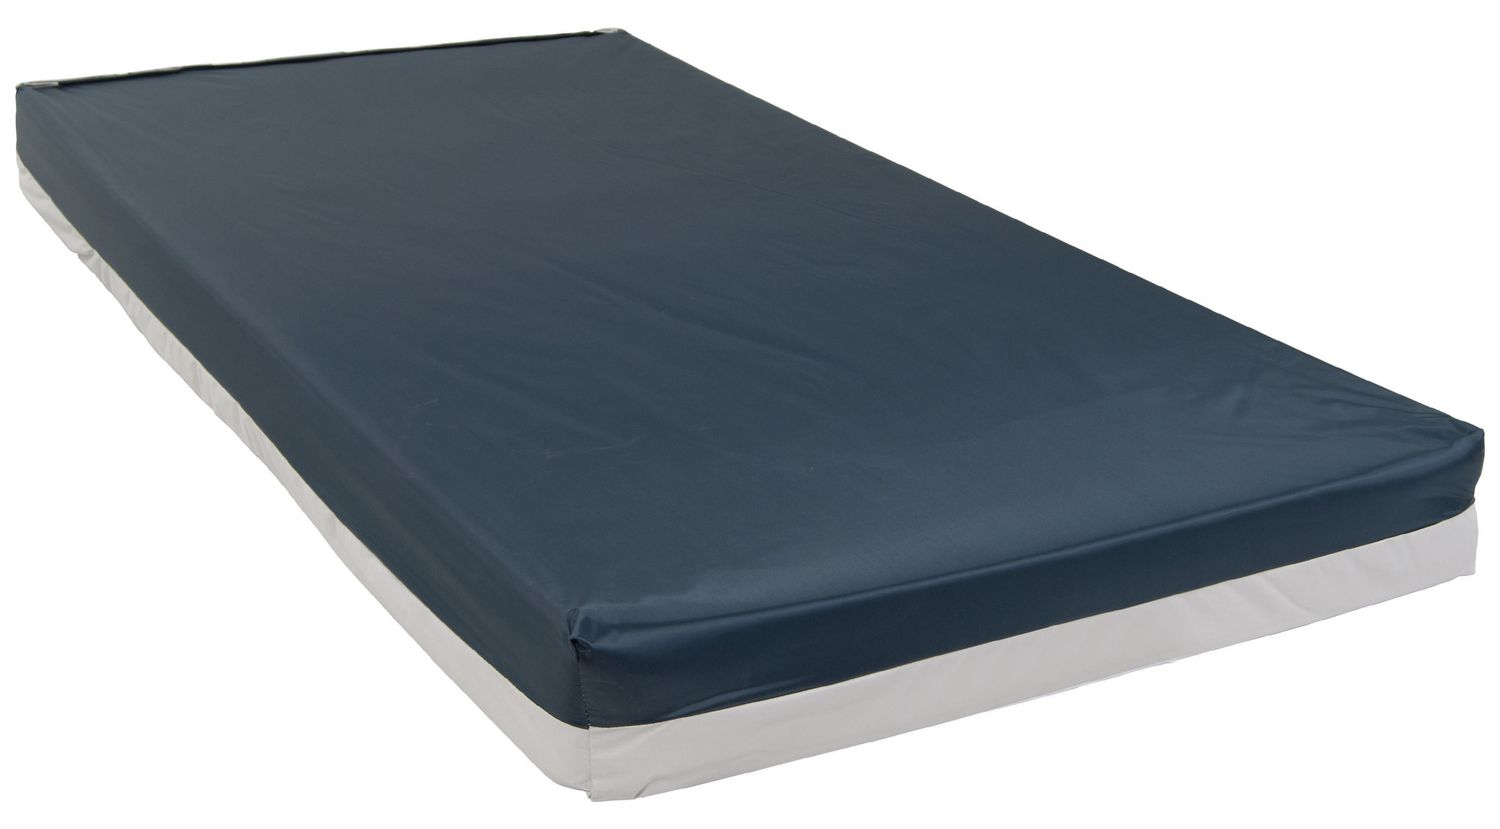 47 inch wide mattress